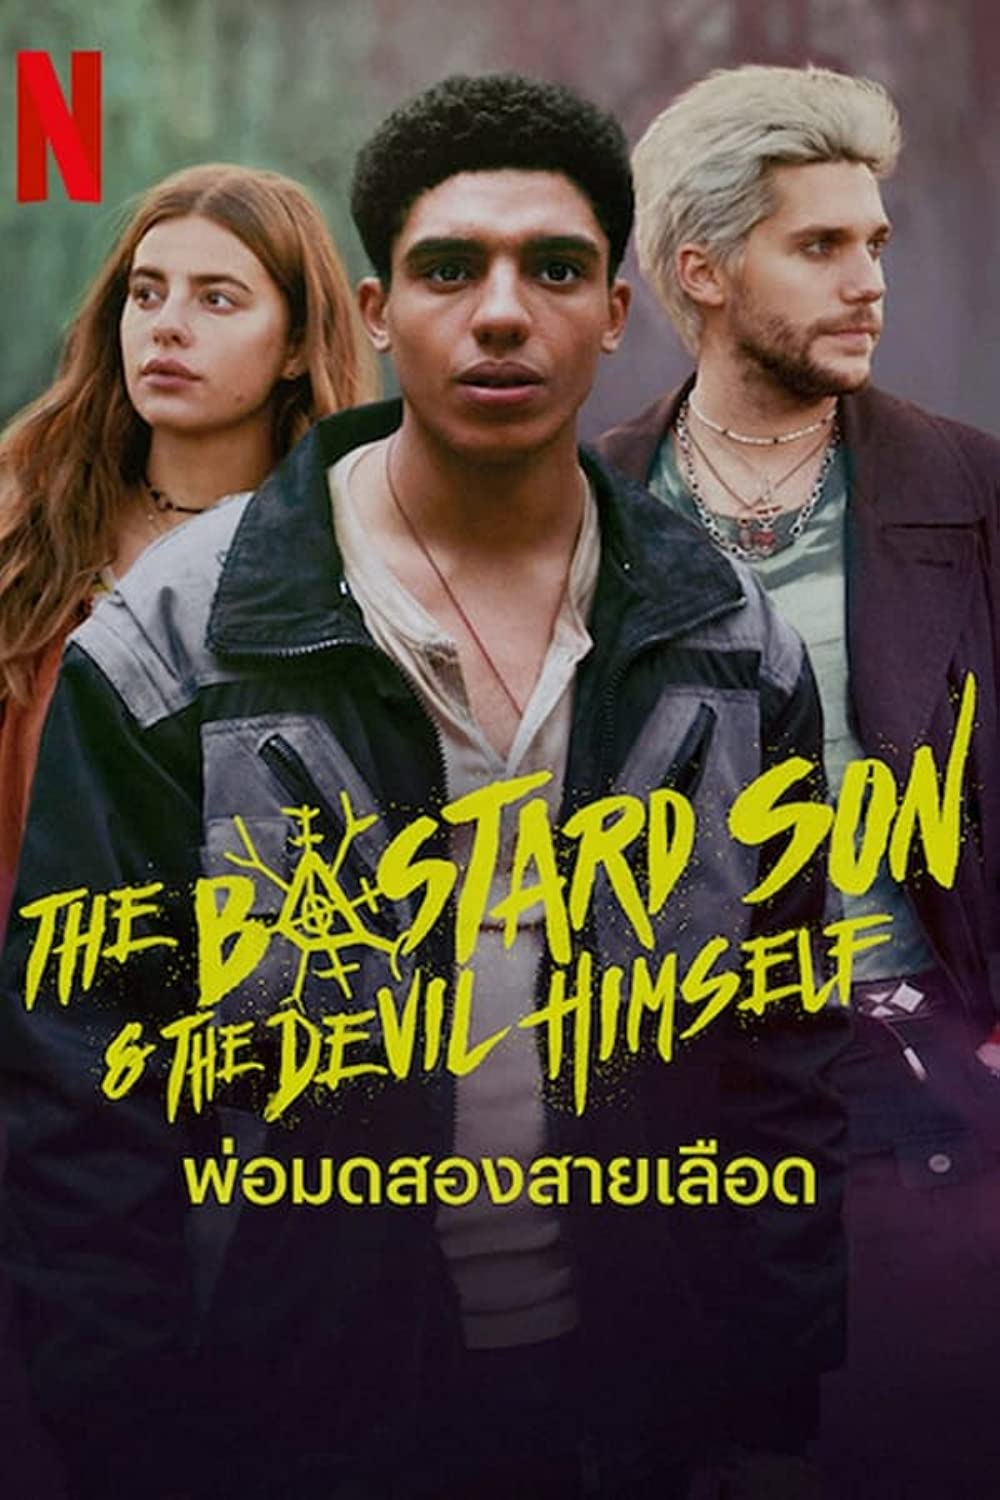 مسلسل The Bastard Son & The Devil Himself الموسم 1 الحلقة 5 مترجمة